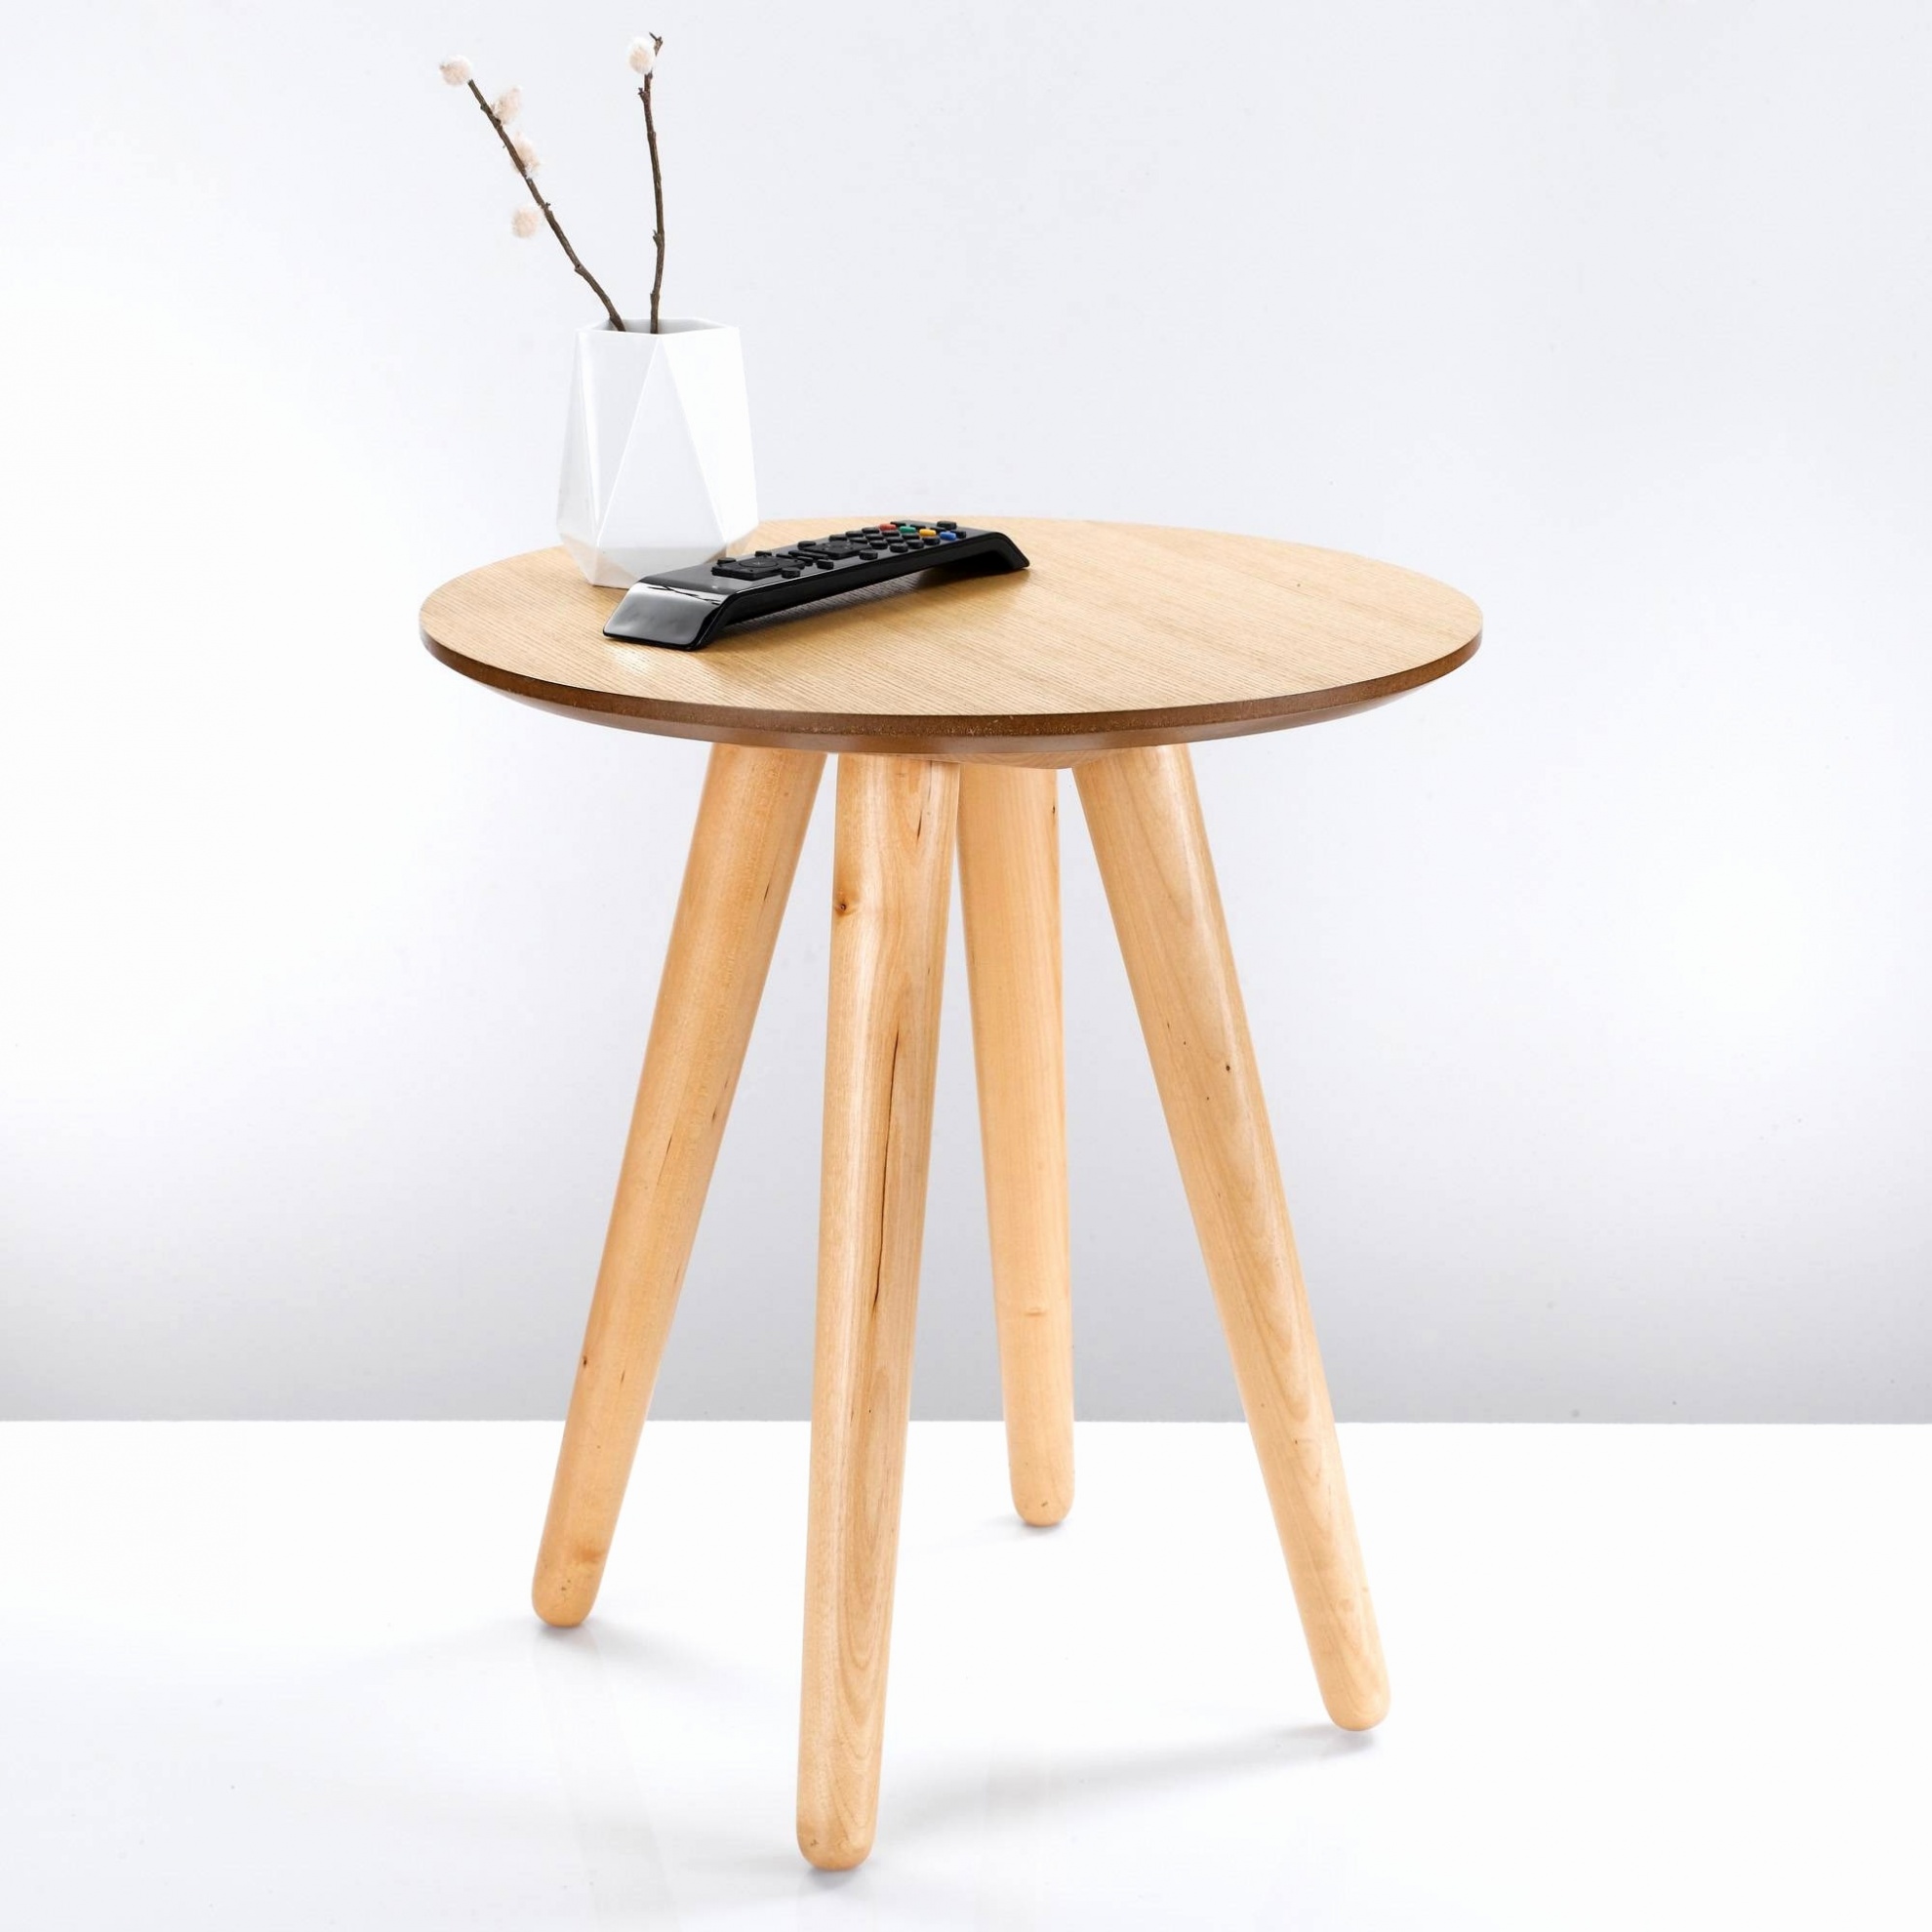 charmant table basse exterieur design table exterieur bois luxe table basse design bois of table basse design bois